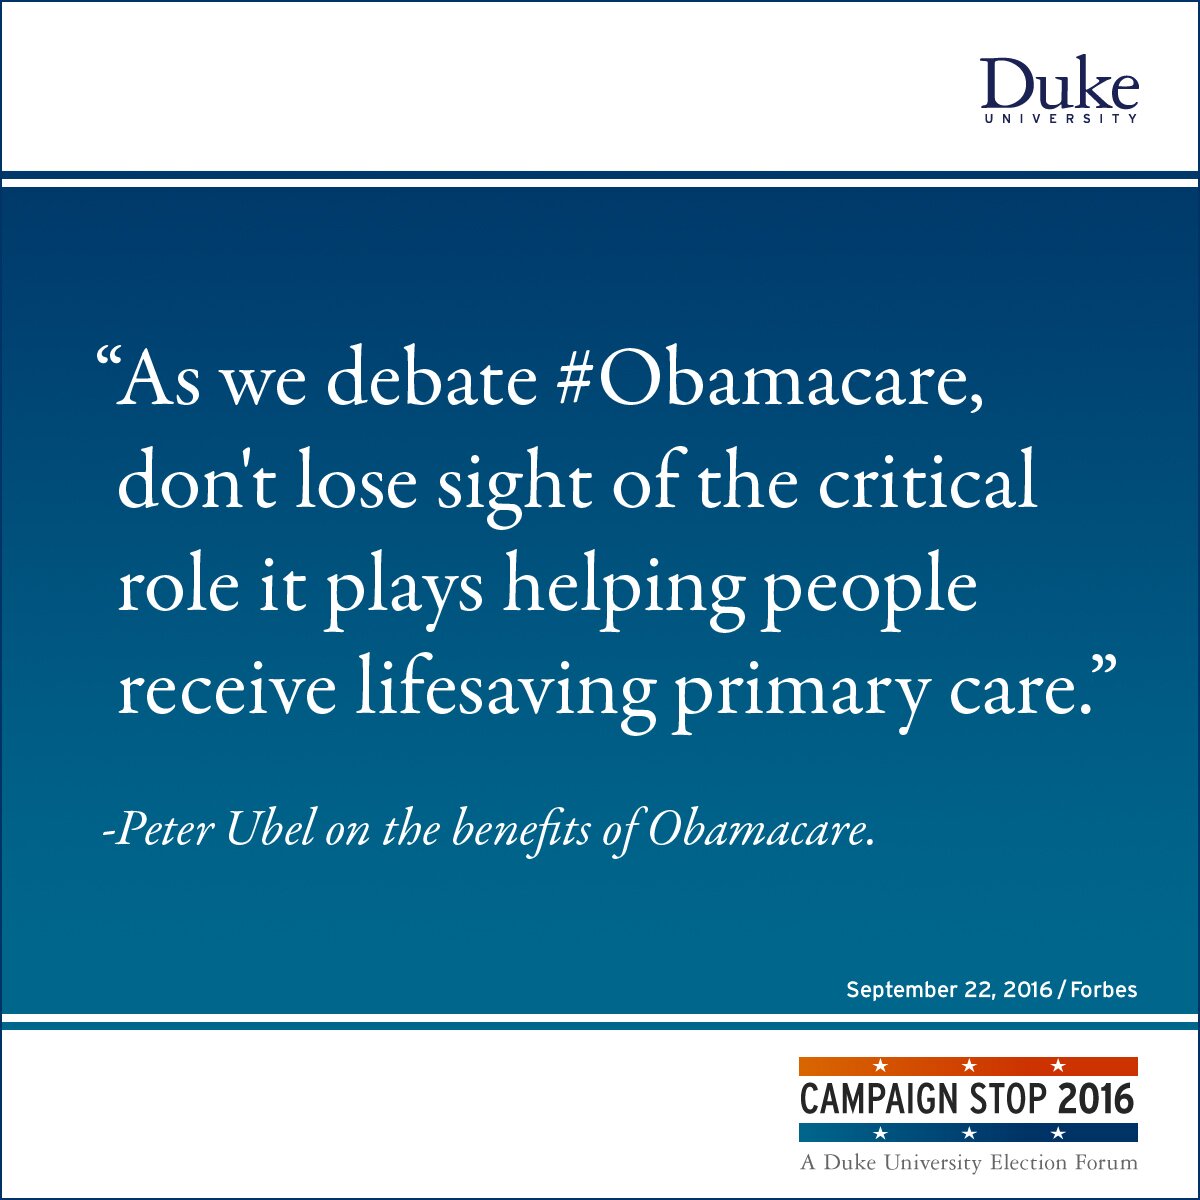 “As we debate #Obamacare, don